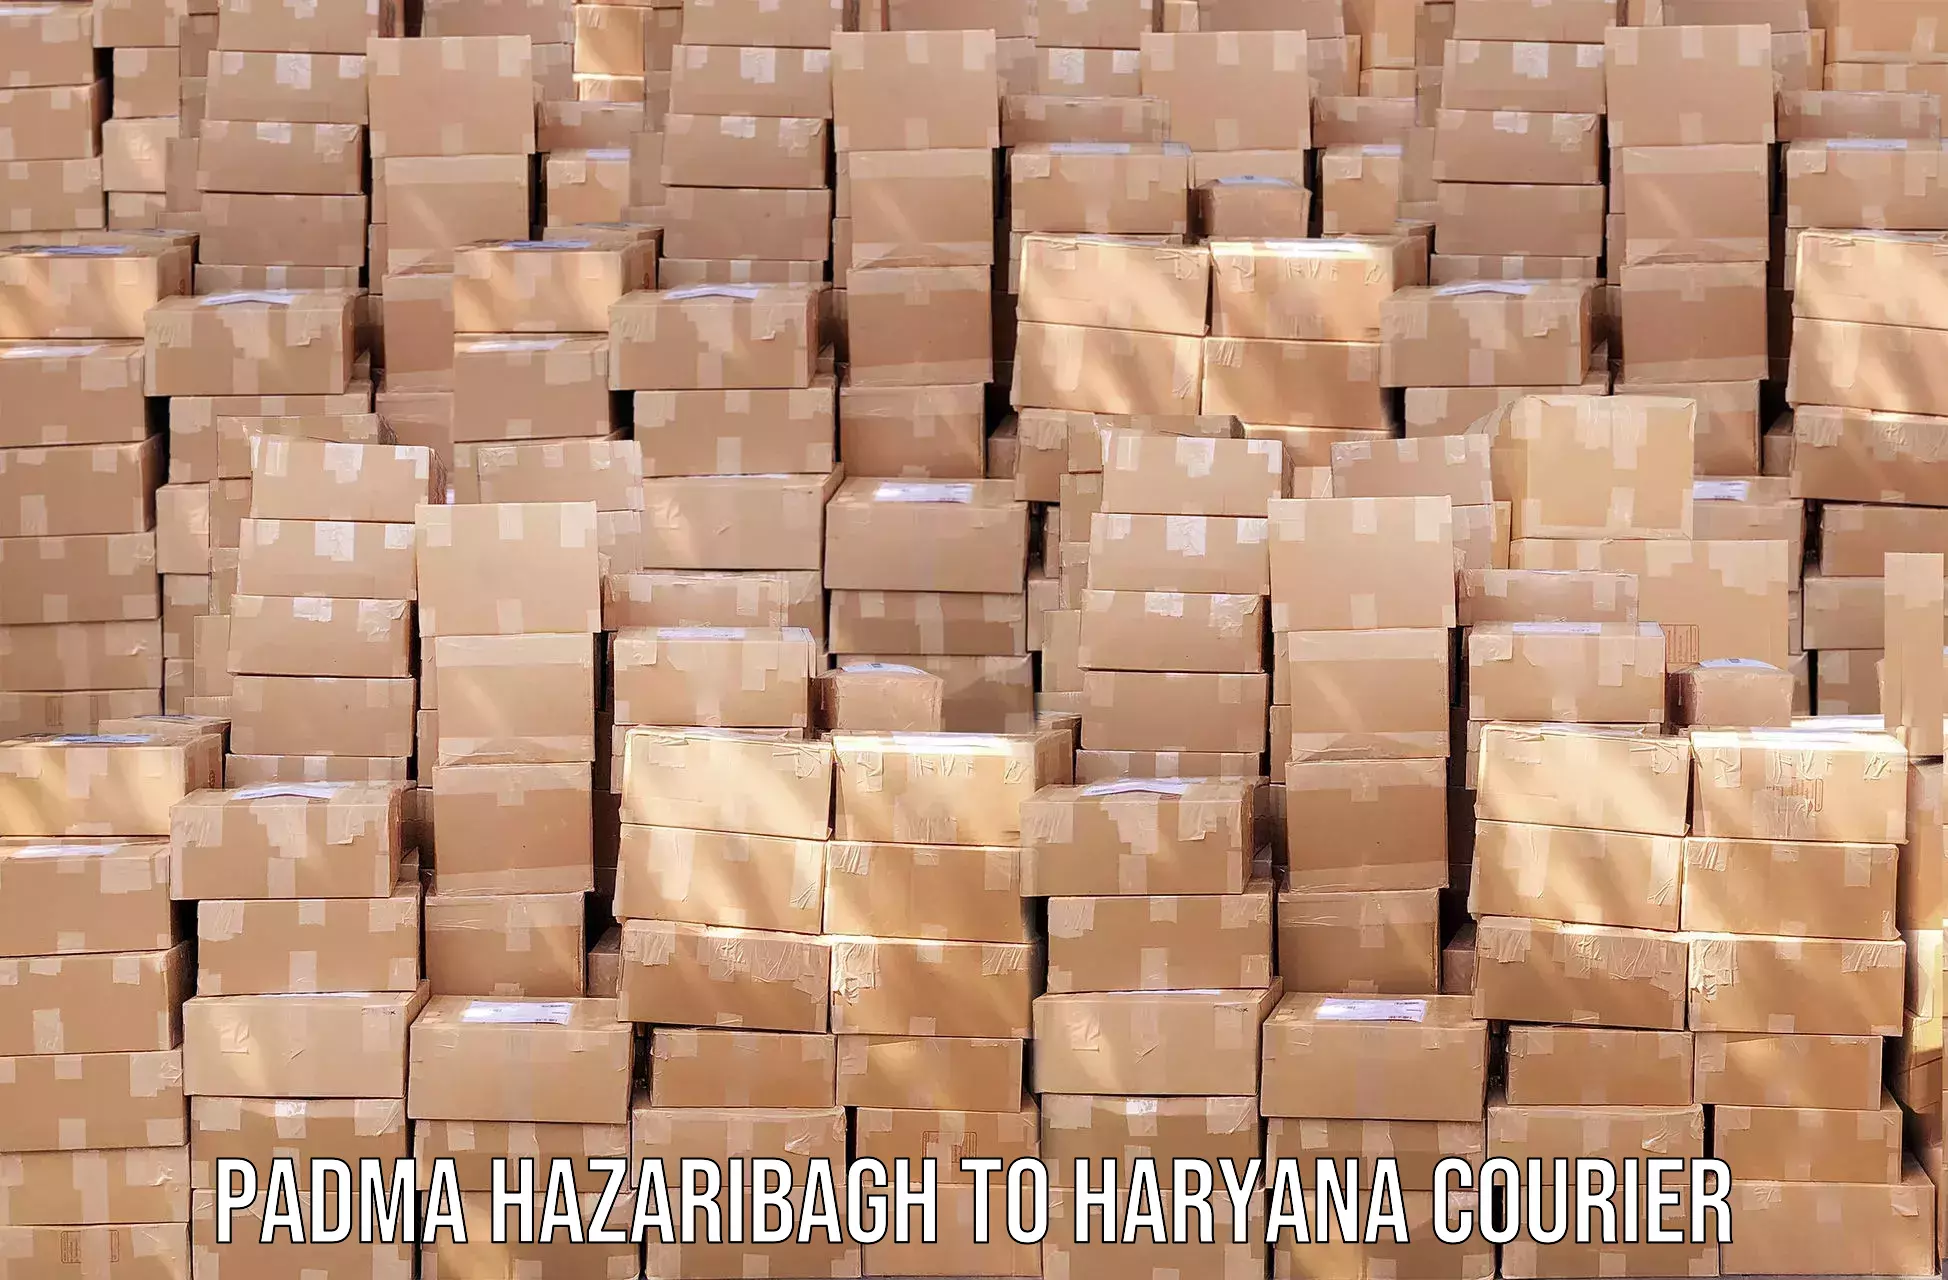 Automated shipping Padma Hazaribagh to Chaudhary Charan Singh Haryana Agricultural University Hisar